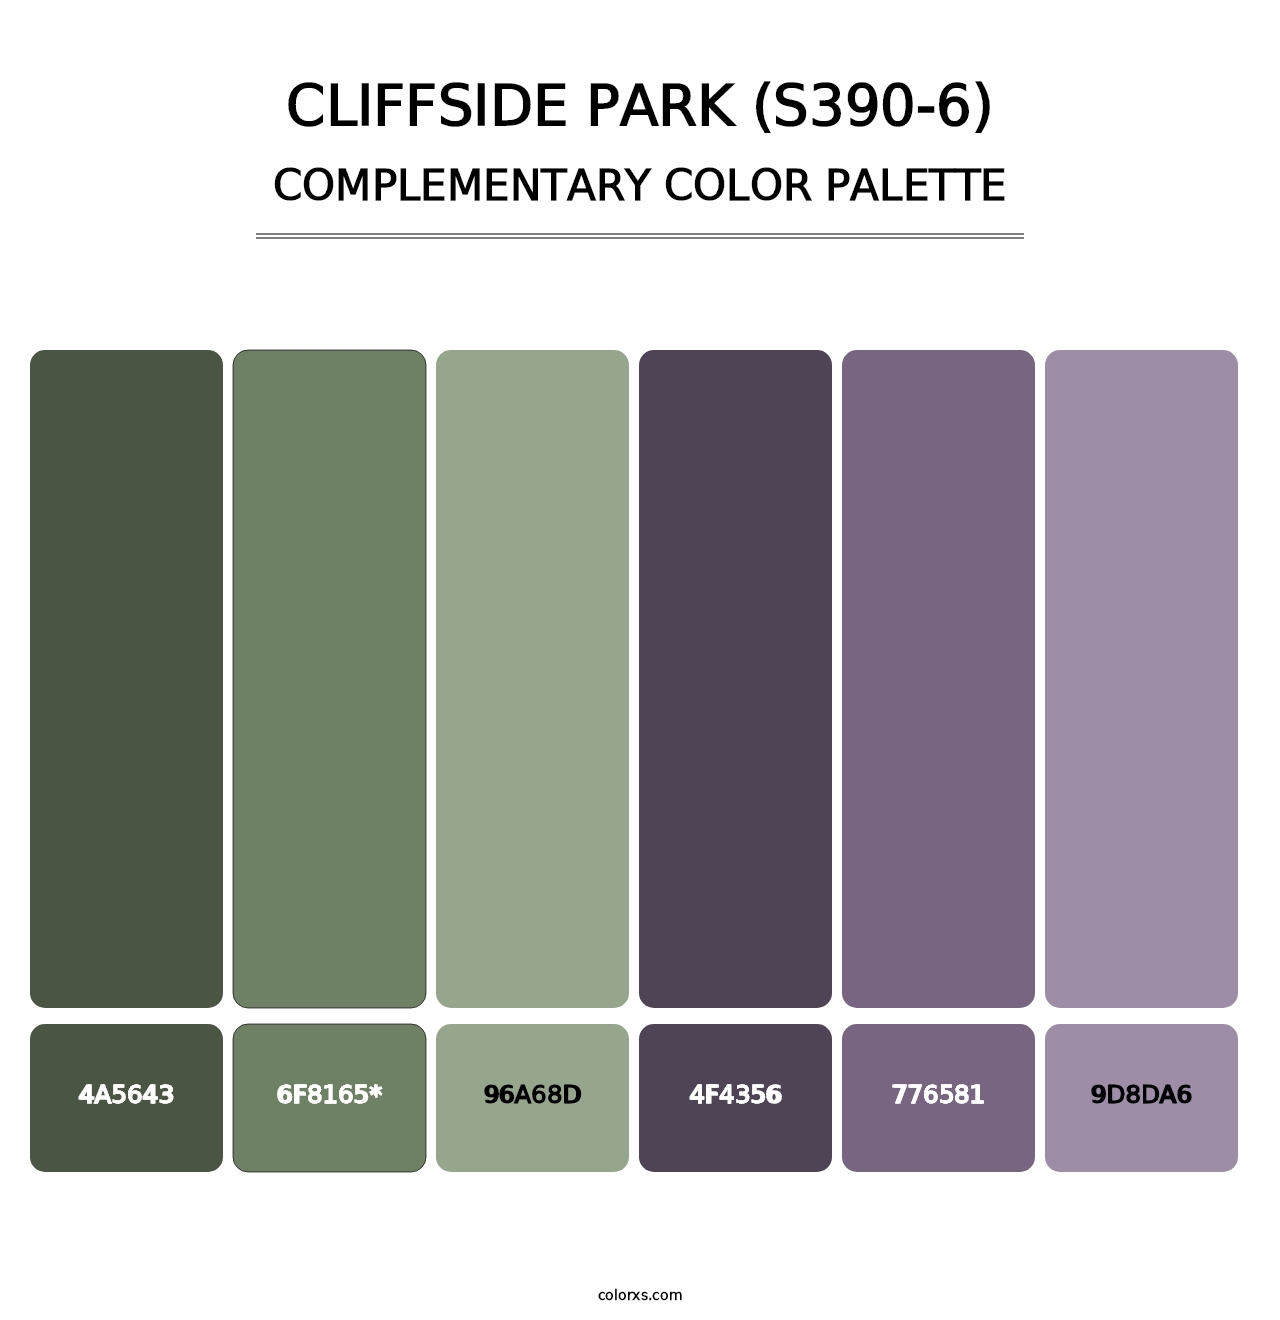 Cliffside Park (S390-6) - Complementary Color Palette